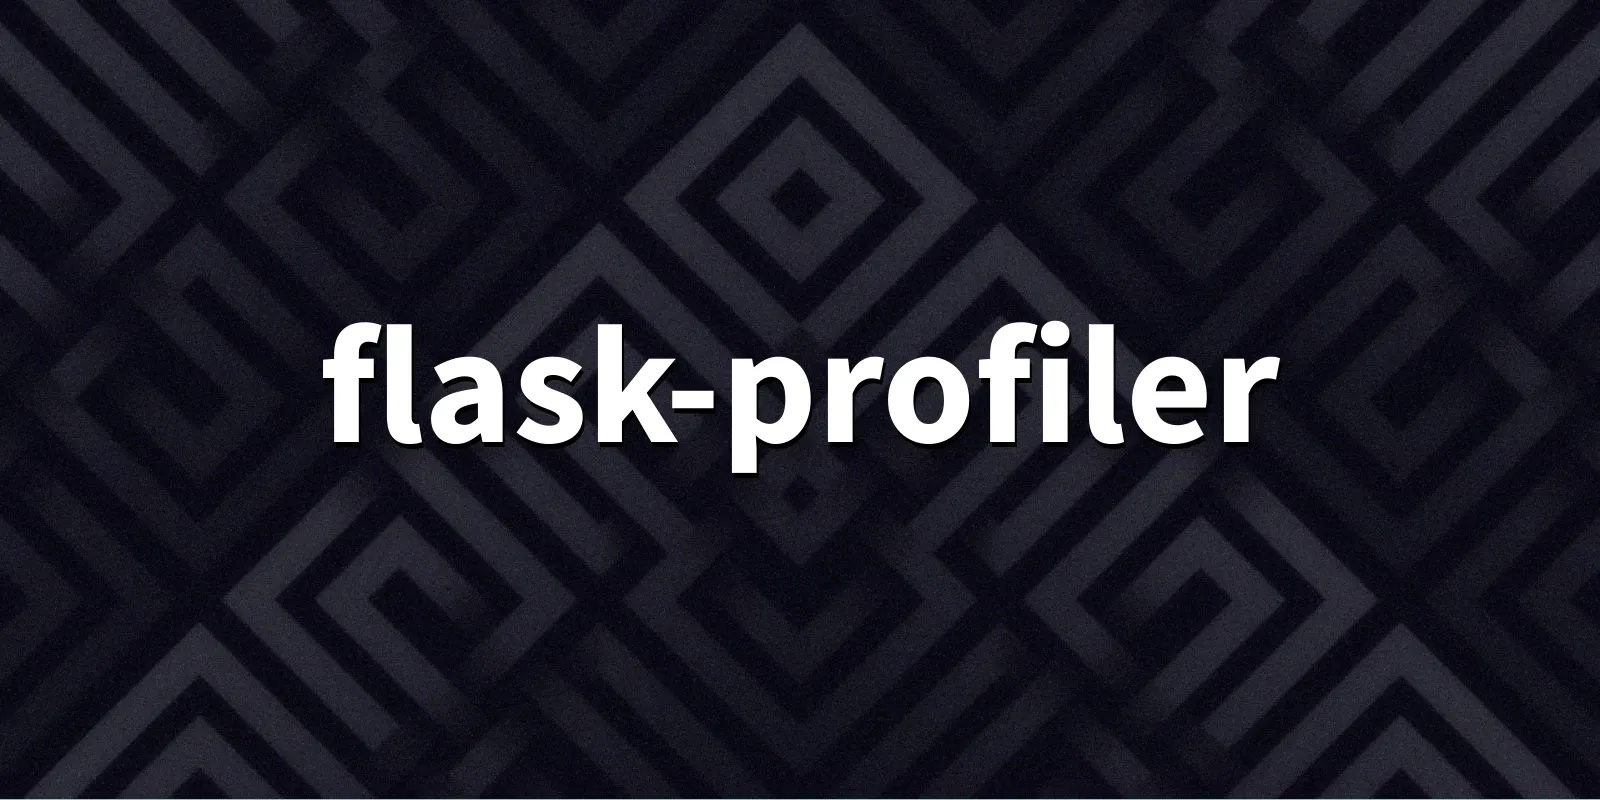 /pkg/f/flask-profiler/flask-profiler-banner.webp